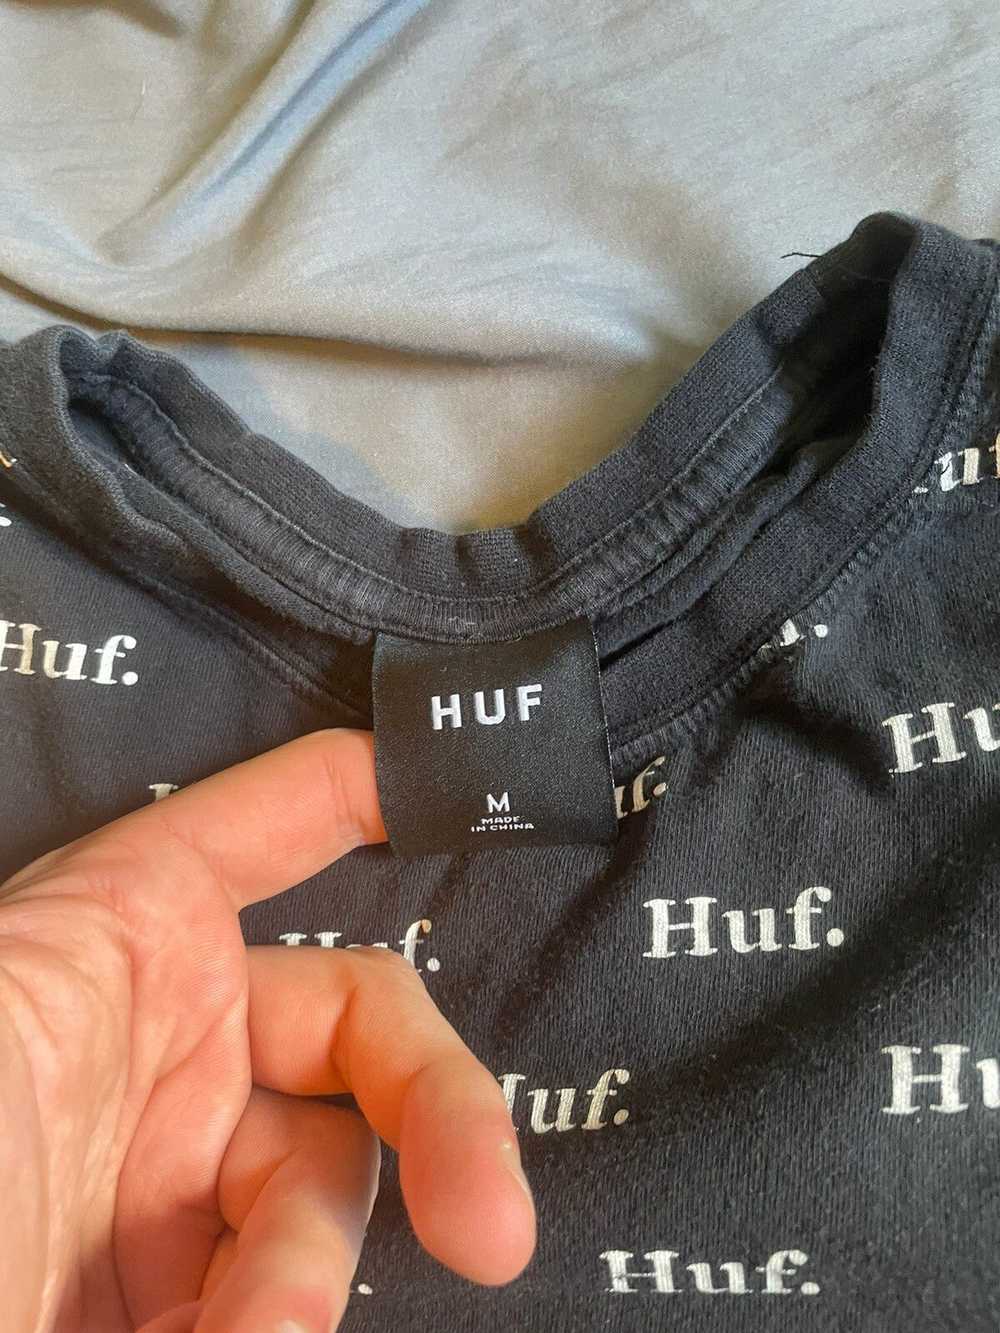 Huf Huf T Shirt - image 3